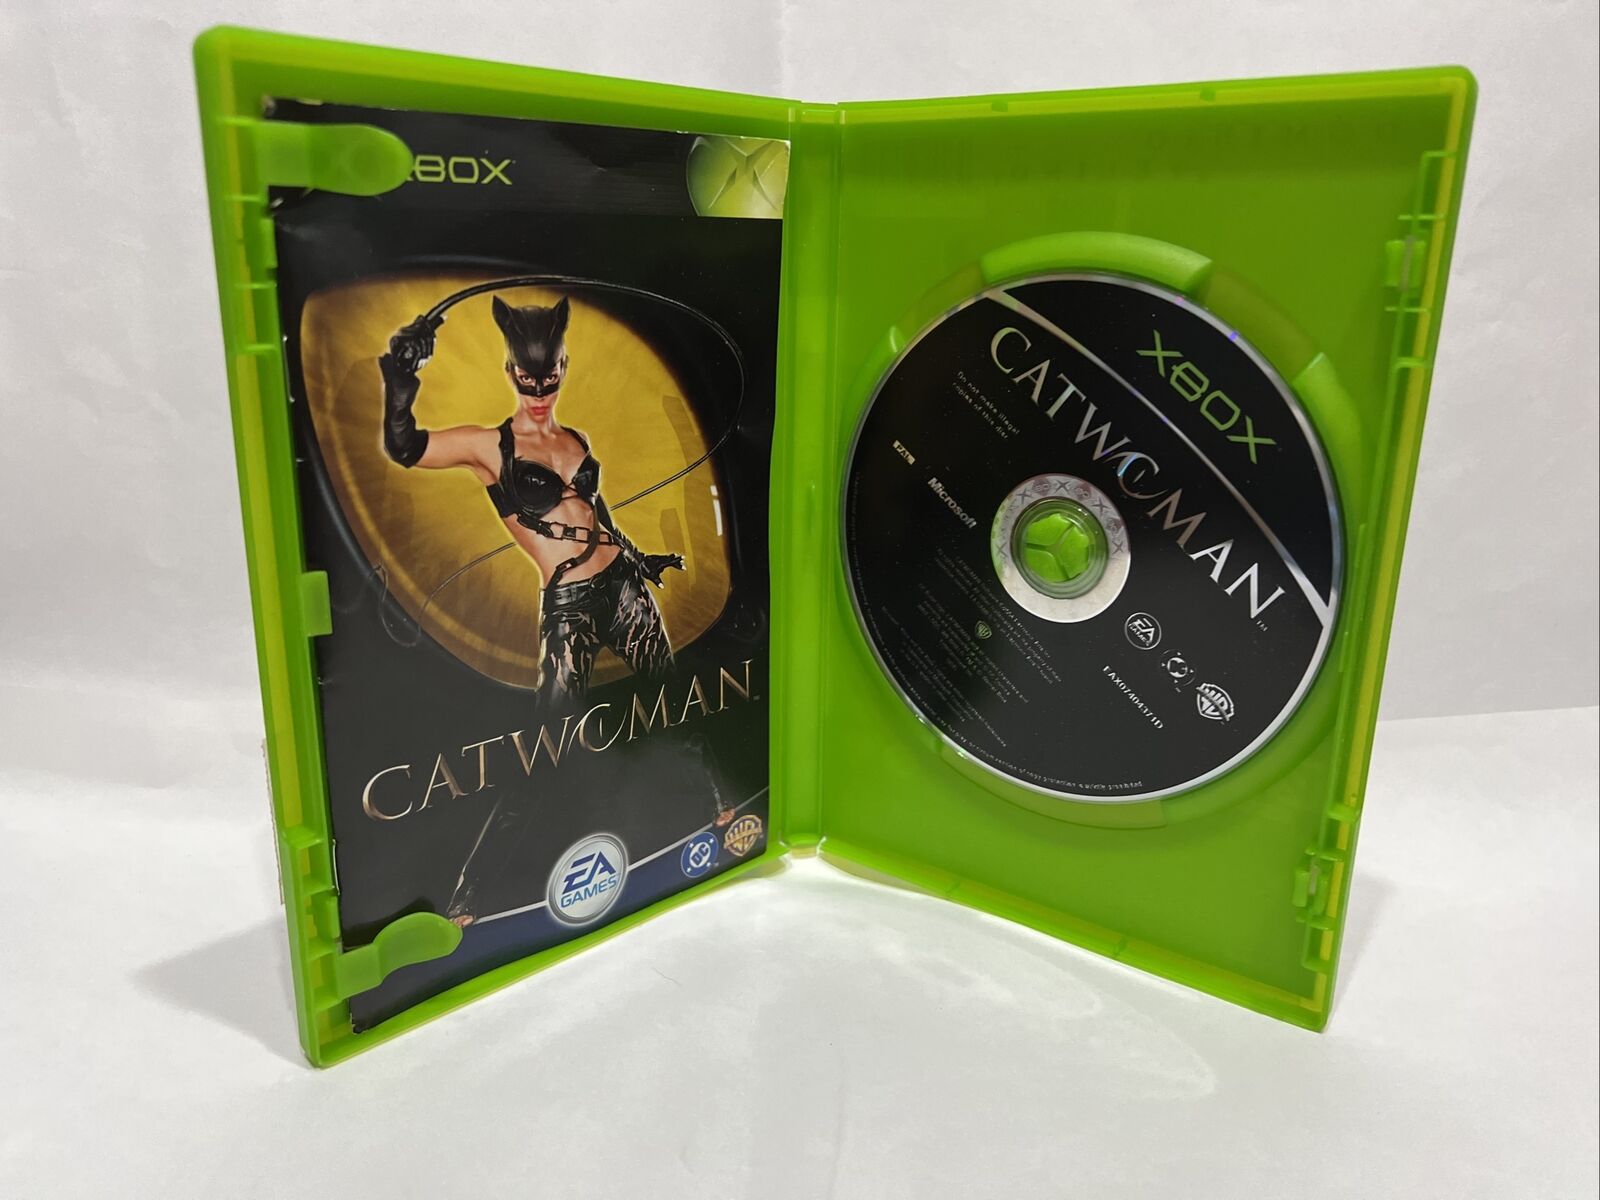 Microsoft-Xbox-Videogioco-Catwoman-Pal-Ita-133961273078-4